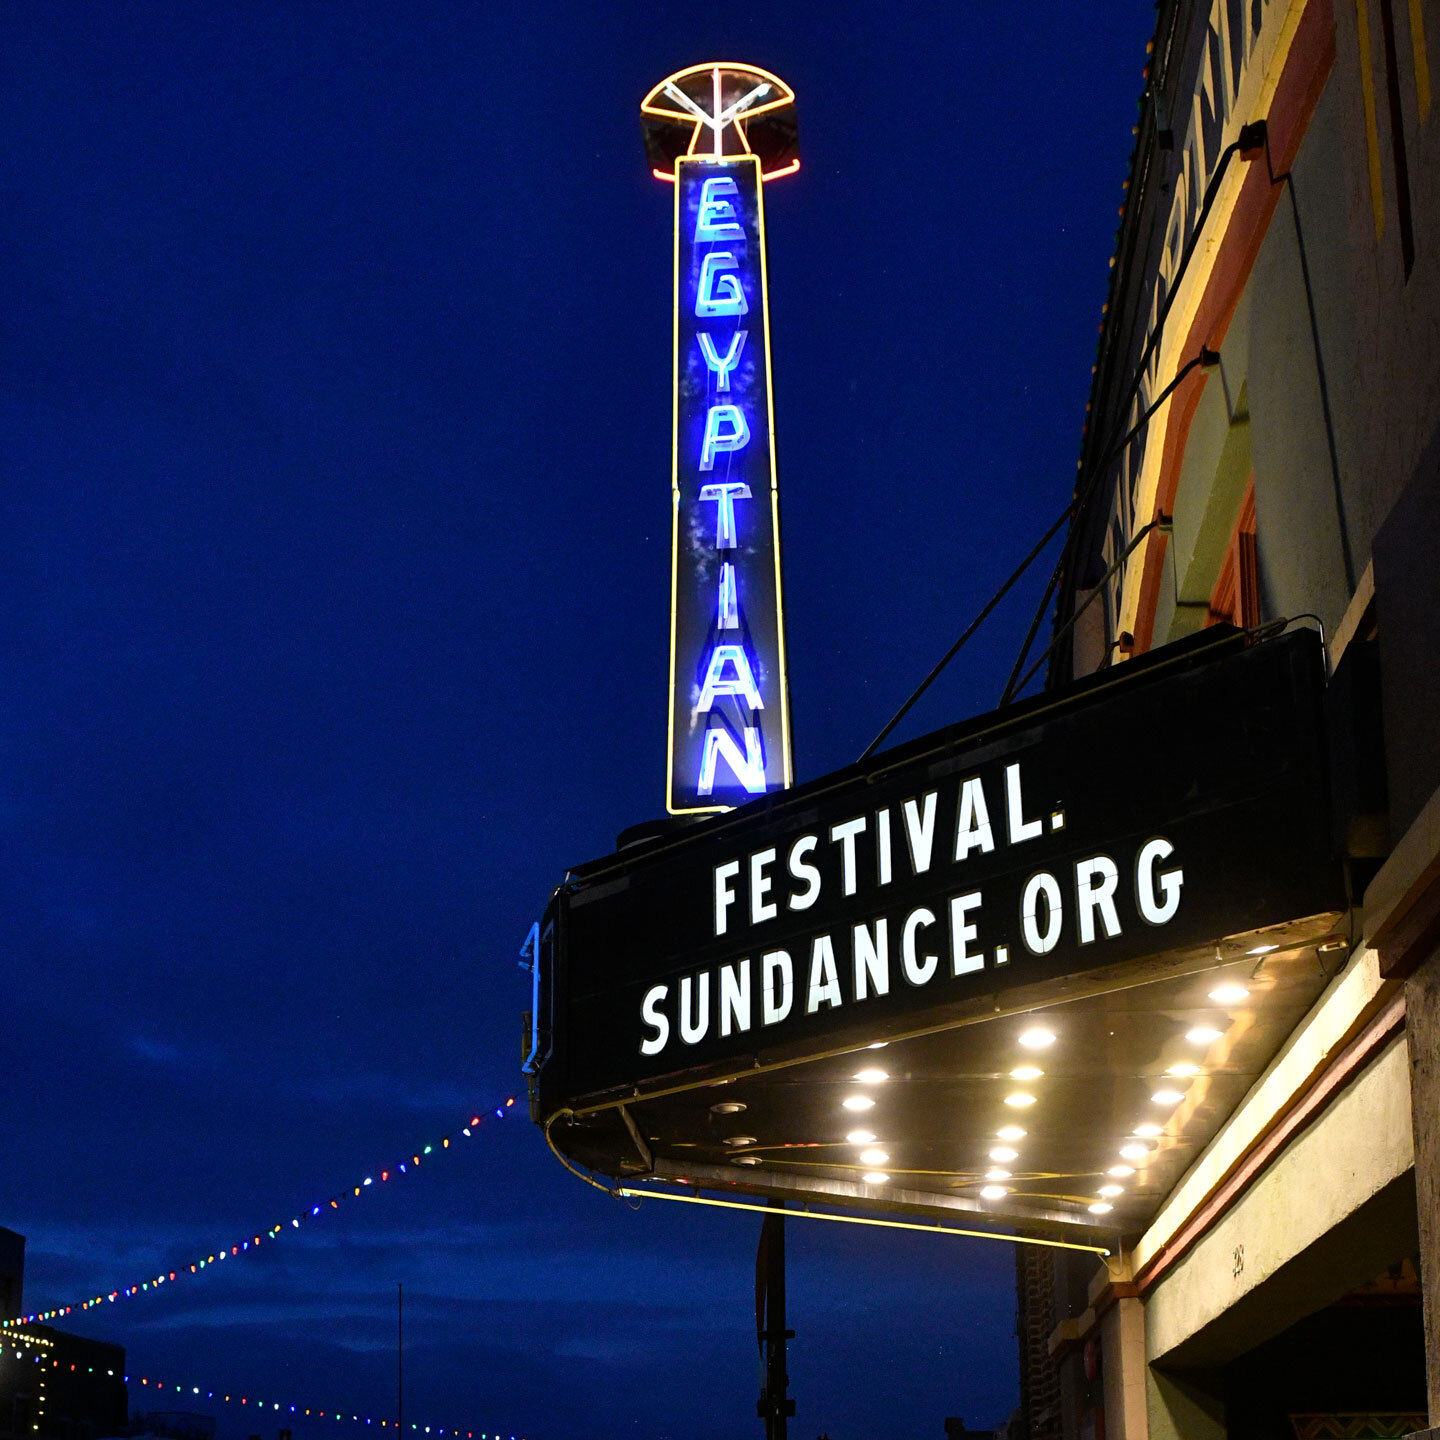 日舞影展電影播映處 Egyptian 劇院的遮篷上顯示 Festival.Sundance.Org